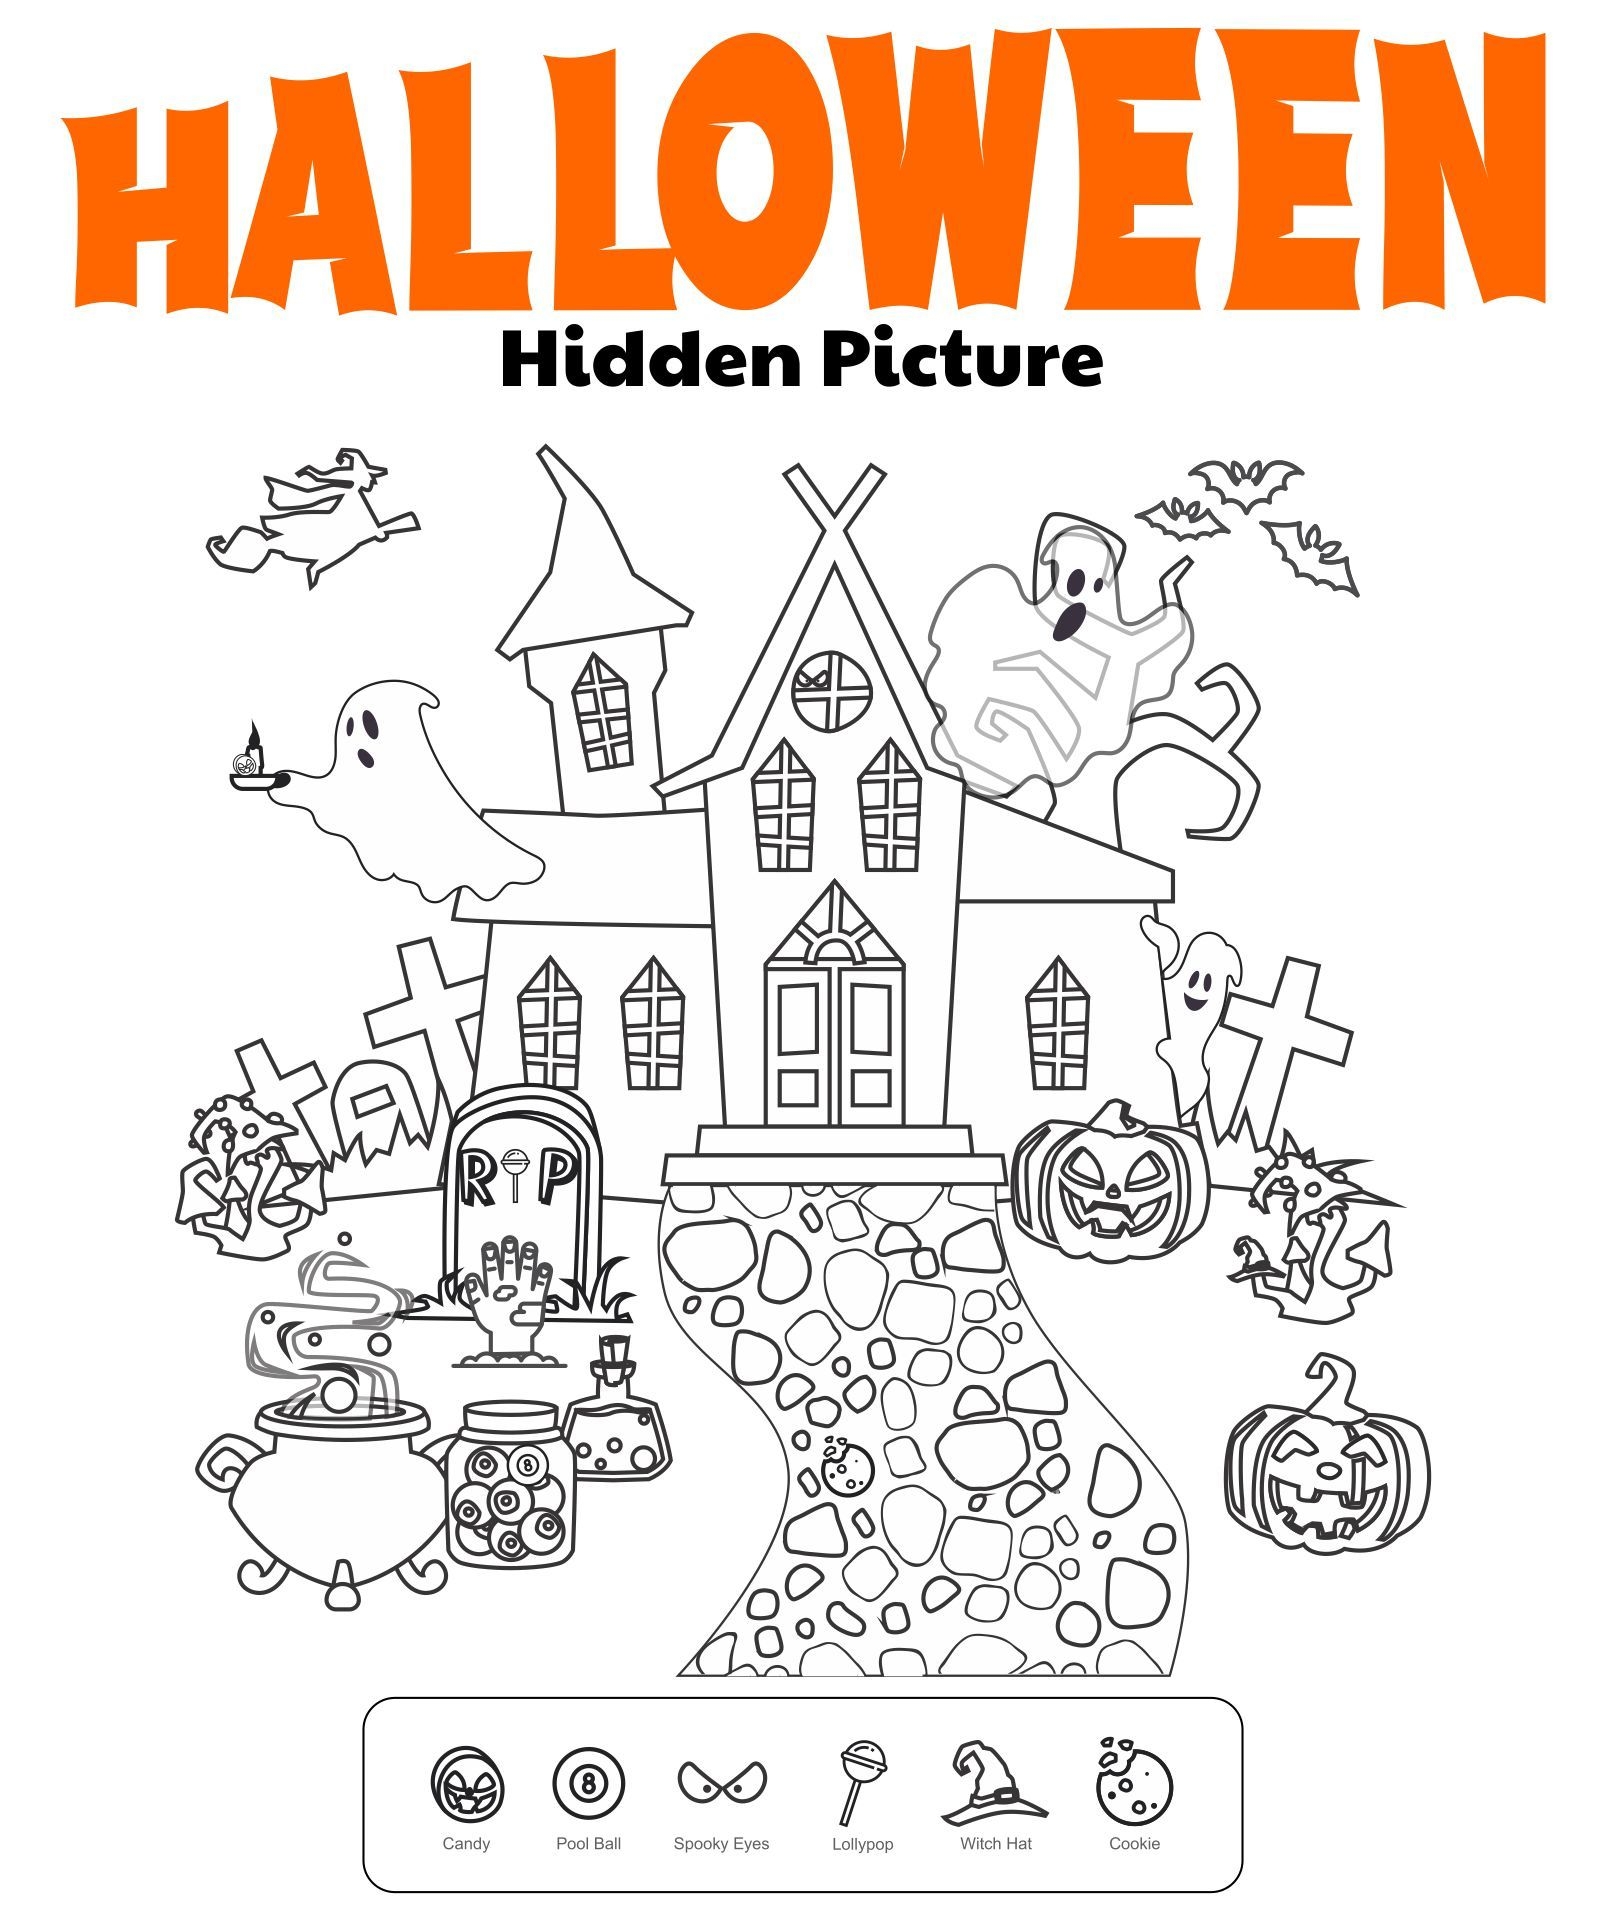 Halloween Hidden Pictures Free Printable